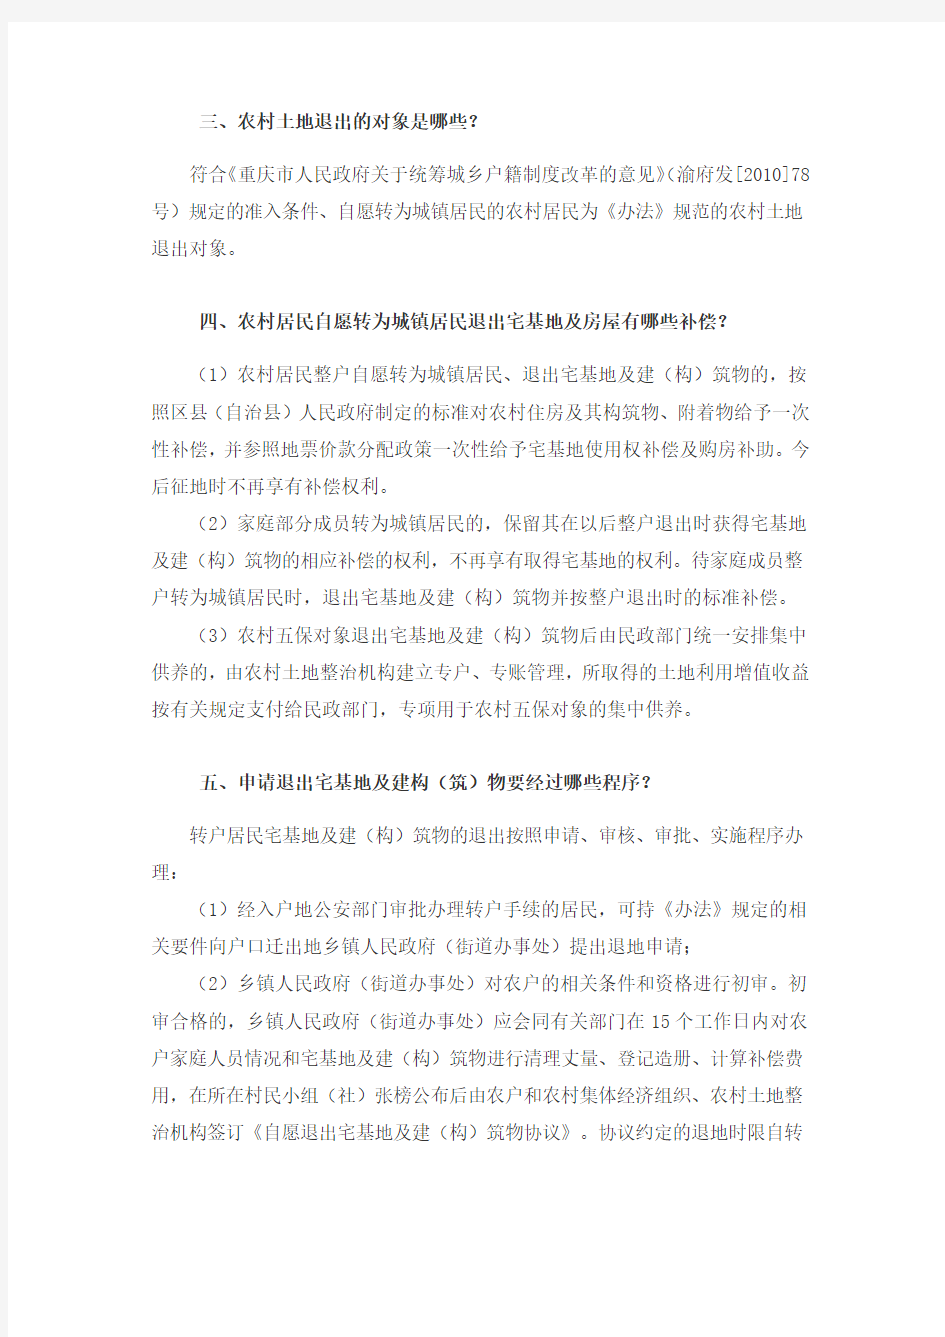 重庆市户籍制度改革农村宅基地退出与利用政策解读